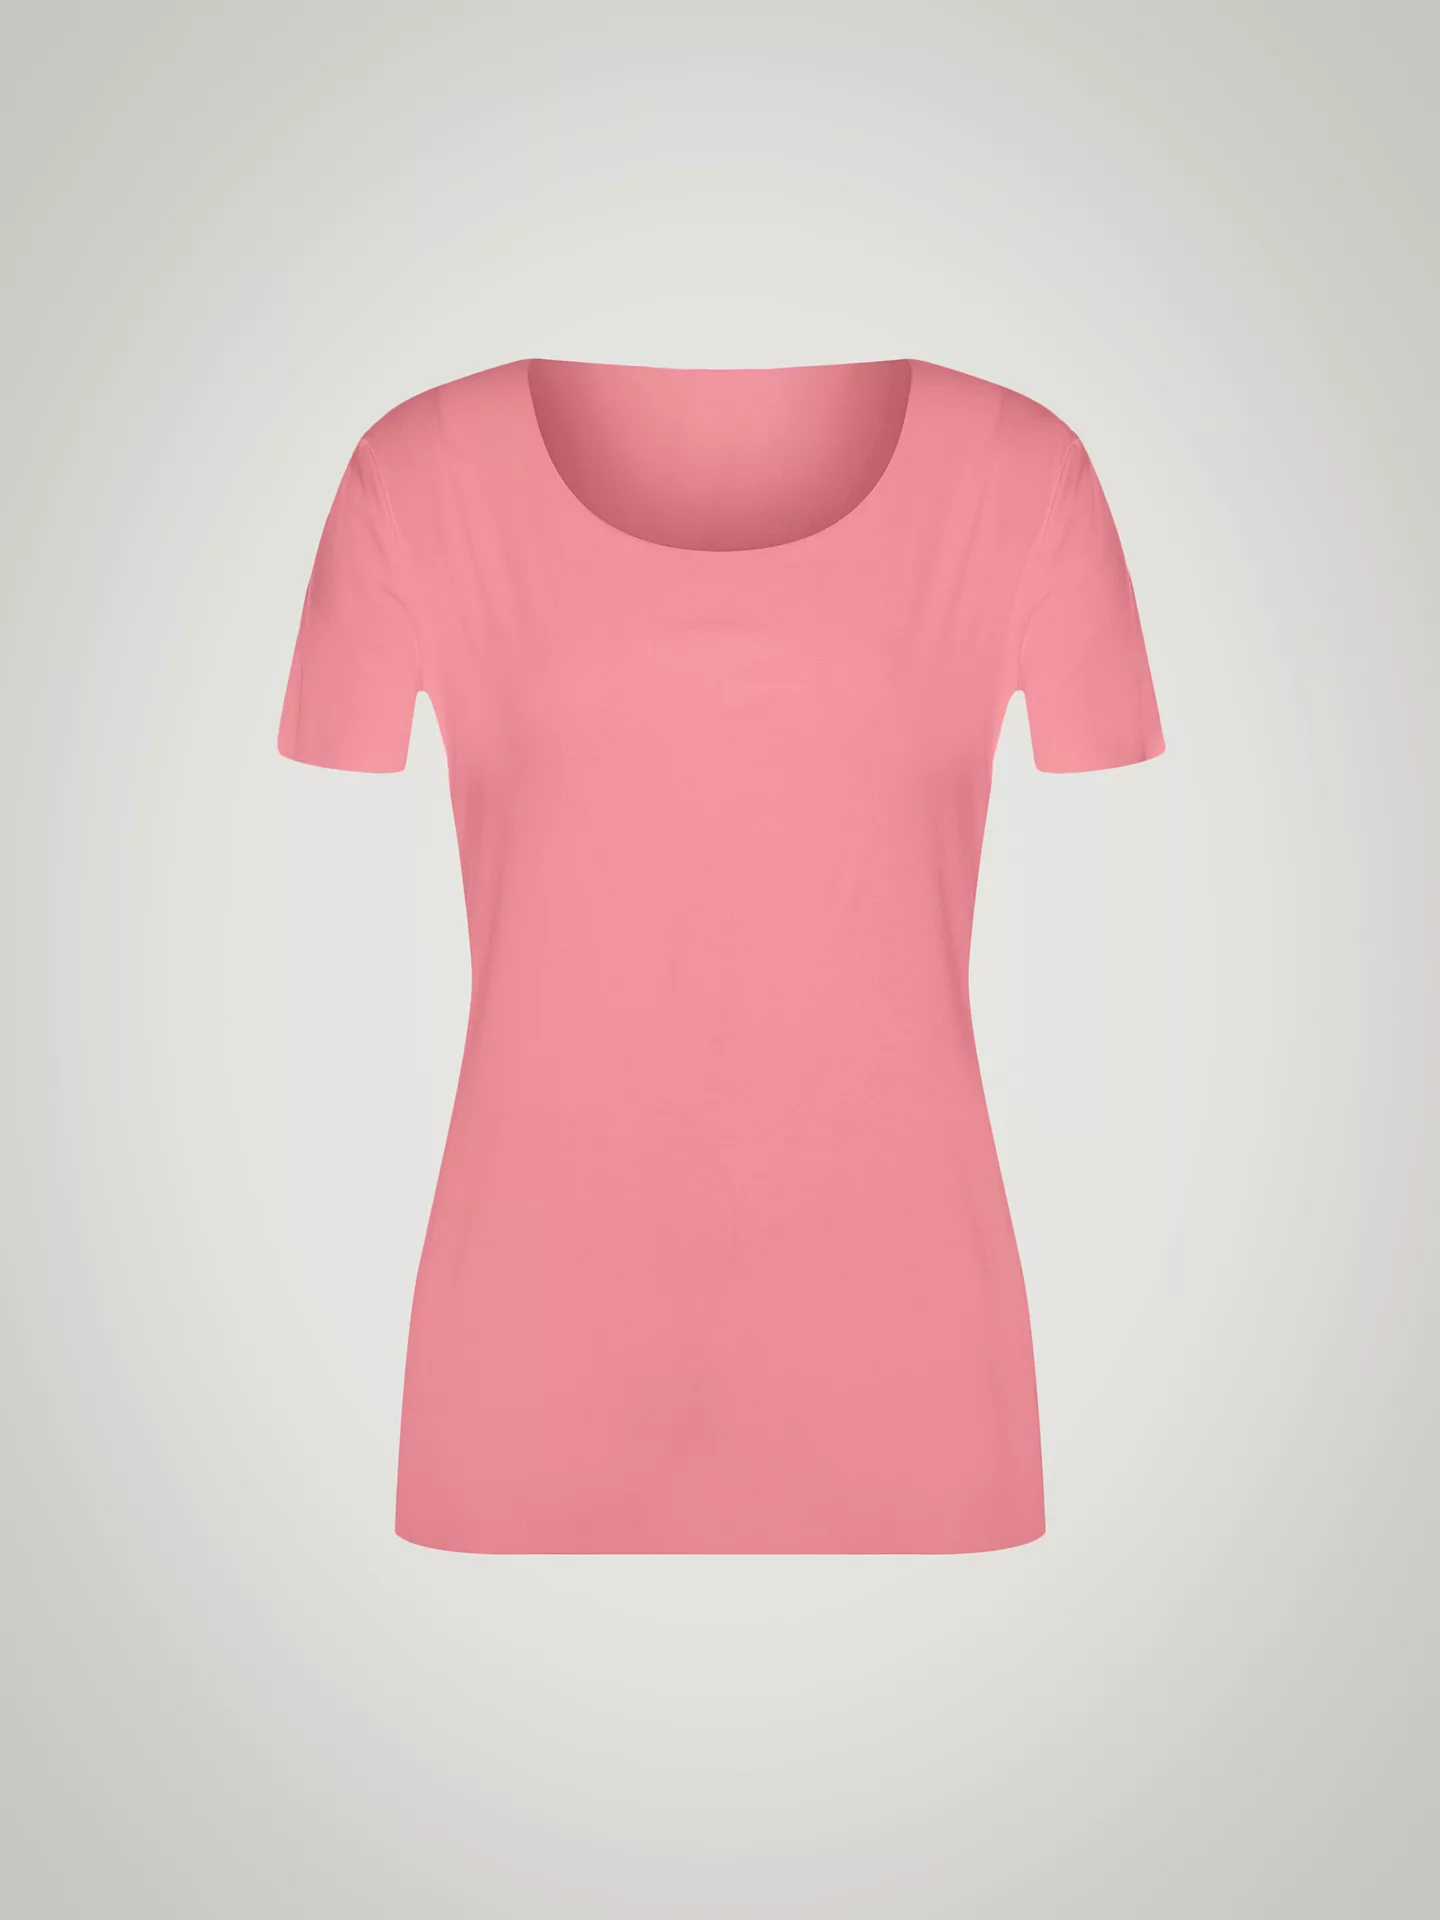 Wolford - Aurora Pure Shirt, Frau, brandied apricot, Größe: M günstig online kaufen